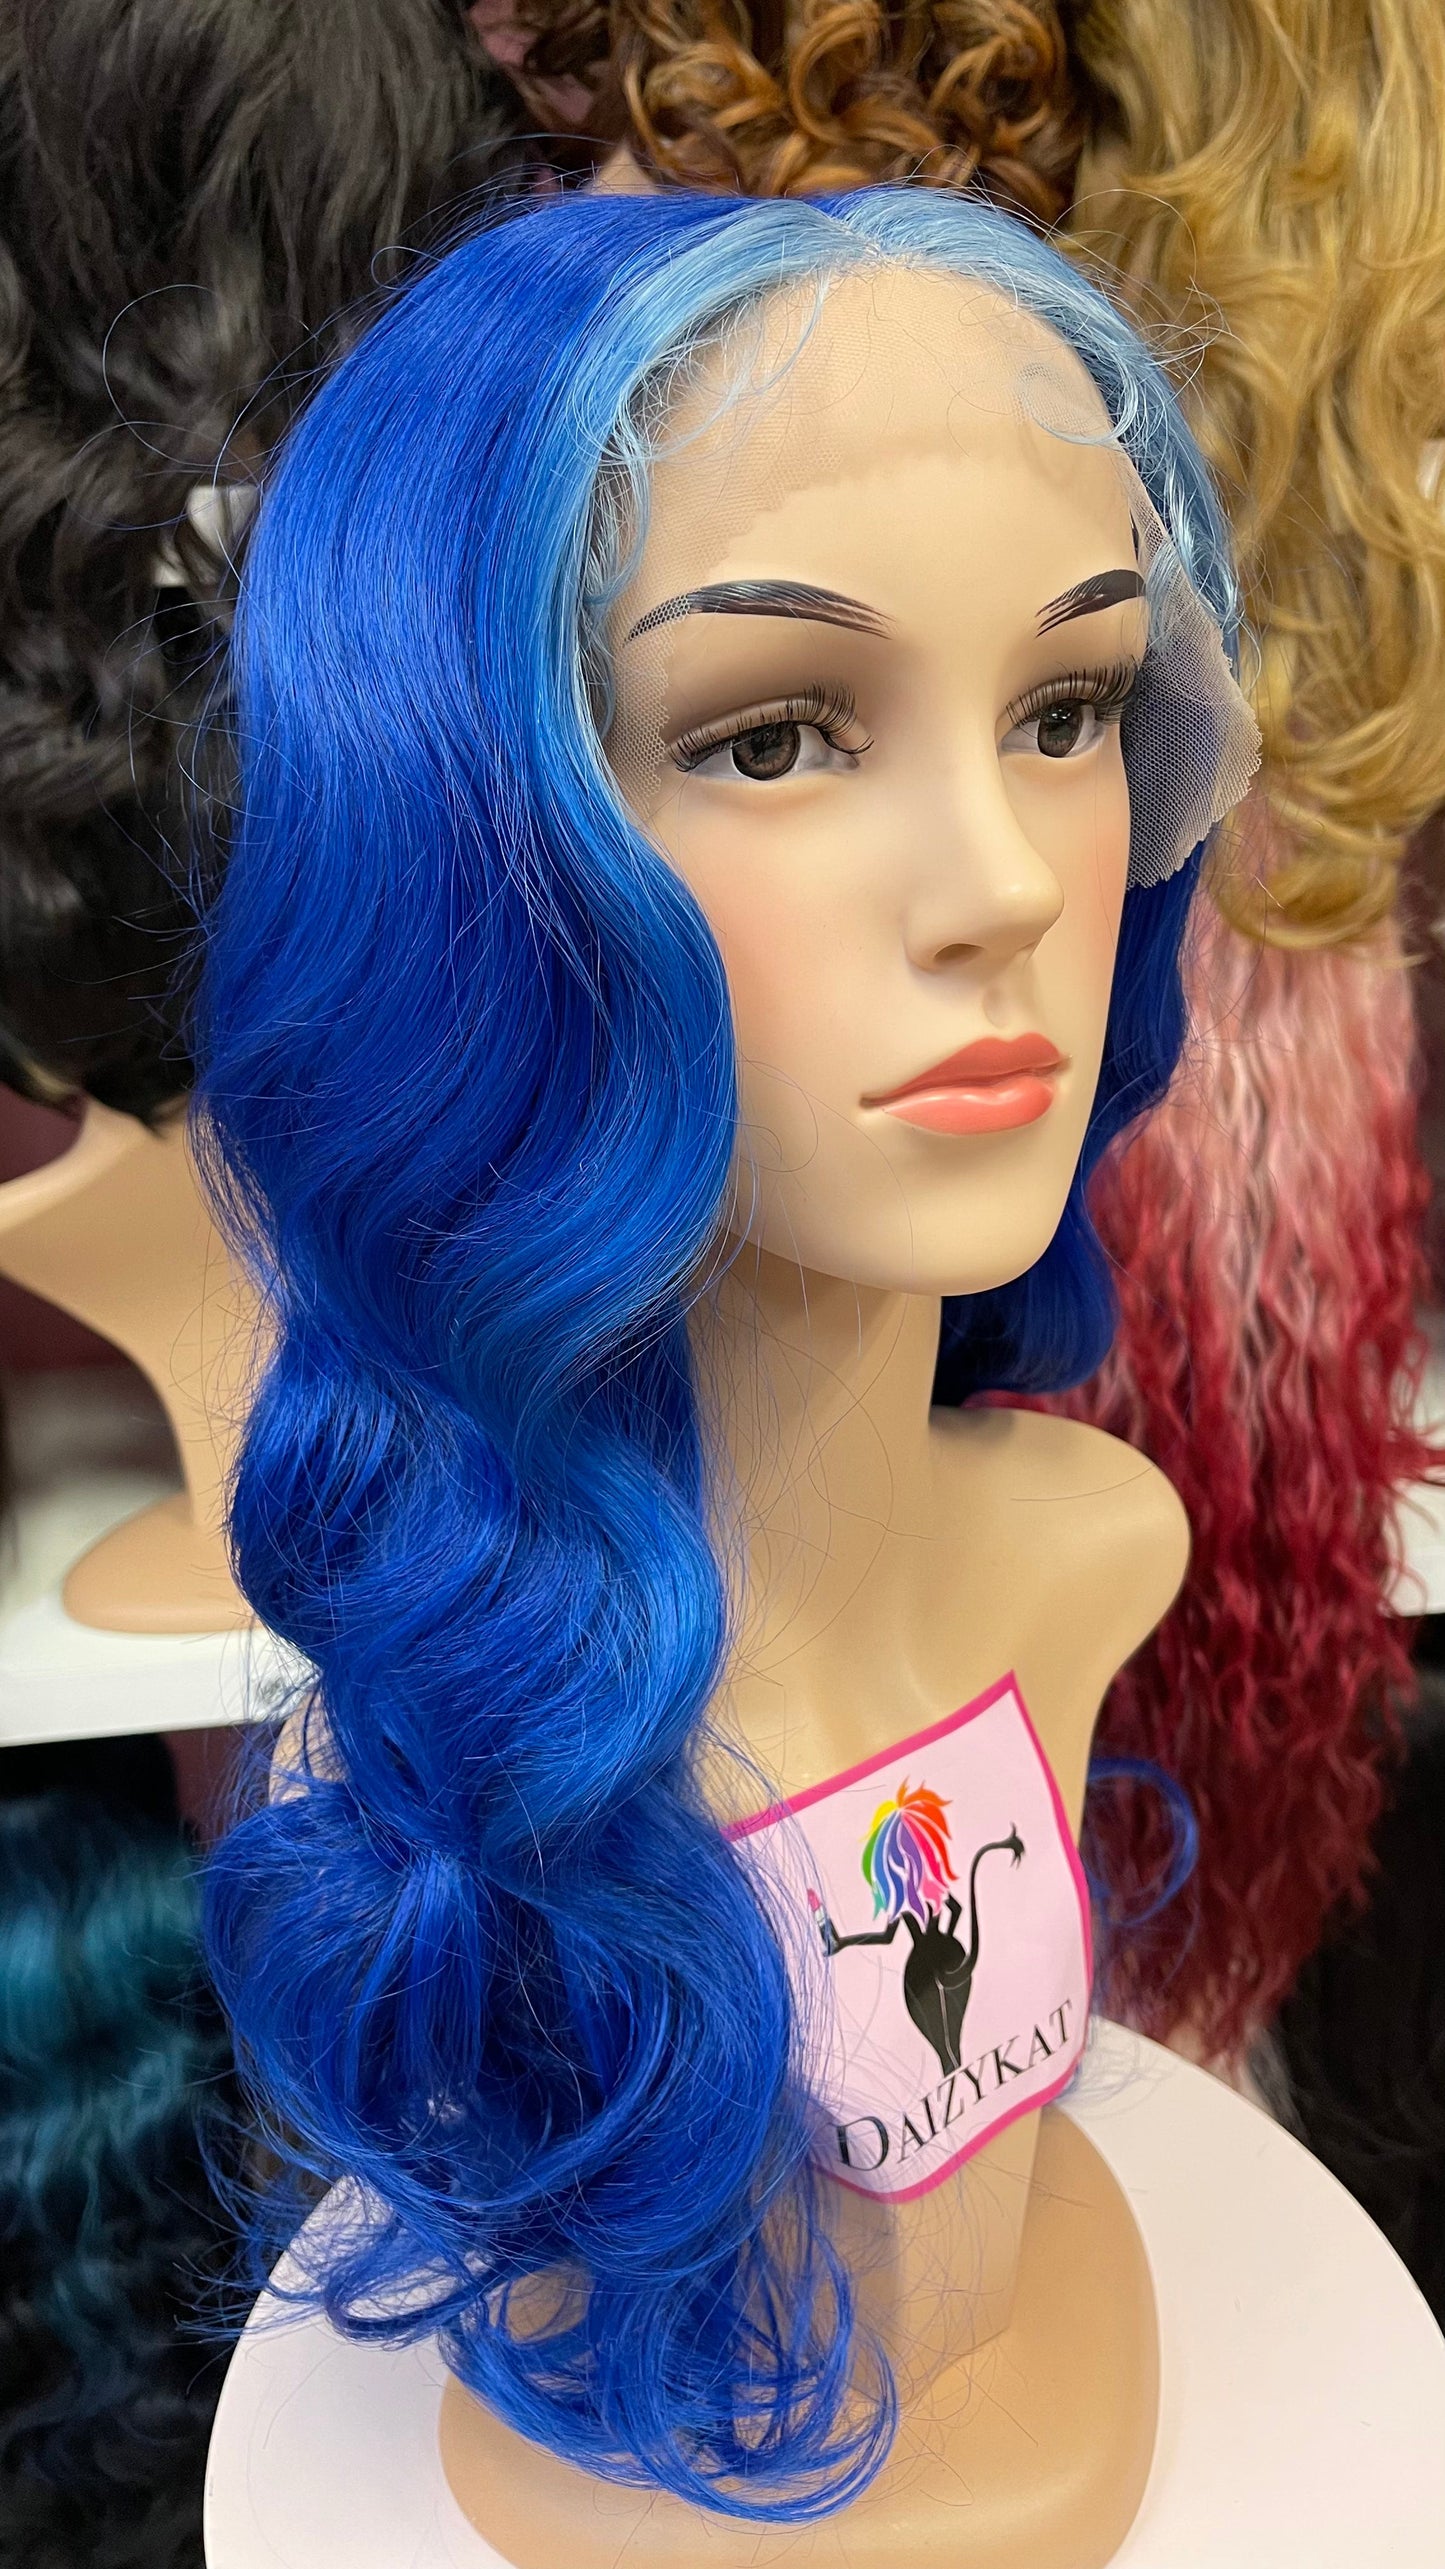 114 Jasmine - Middle Part Lace Front Wig - L.BLUE - DaizyKat Cosmetics 114 Jasmine - Middle Part Lace Front Wig - L.BLUE DaizyKat Cosmetics Wigs